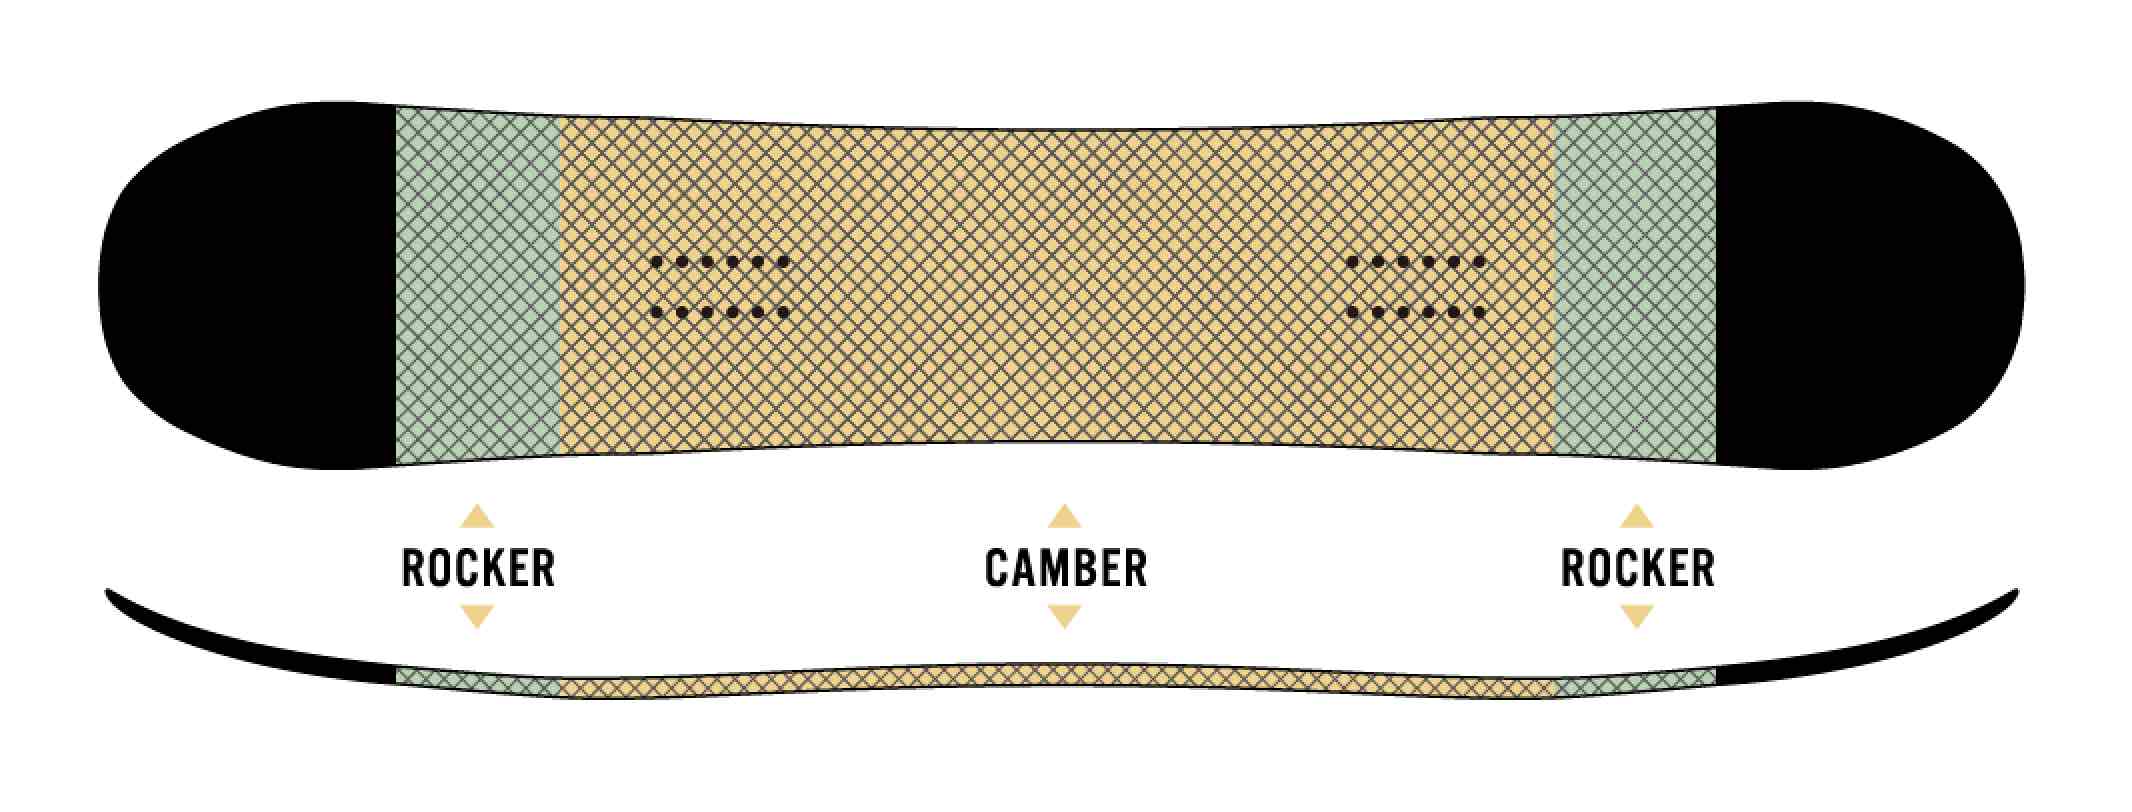 板的中央部分是弧度，CAMROCK在鼻子和尾巴上有一個小搖桿。它具有Camber擅長的鋒利邊緣，高排斥力，以及搖桿特有的良好機動性。這塊板子的特點是可以全面玩的CAMROCK規格。